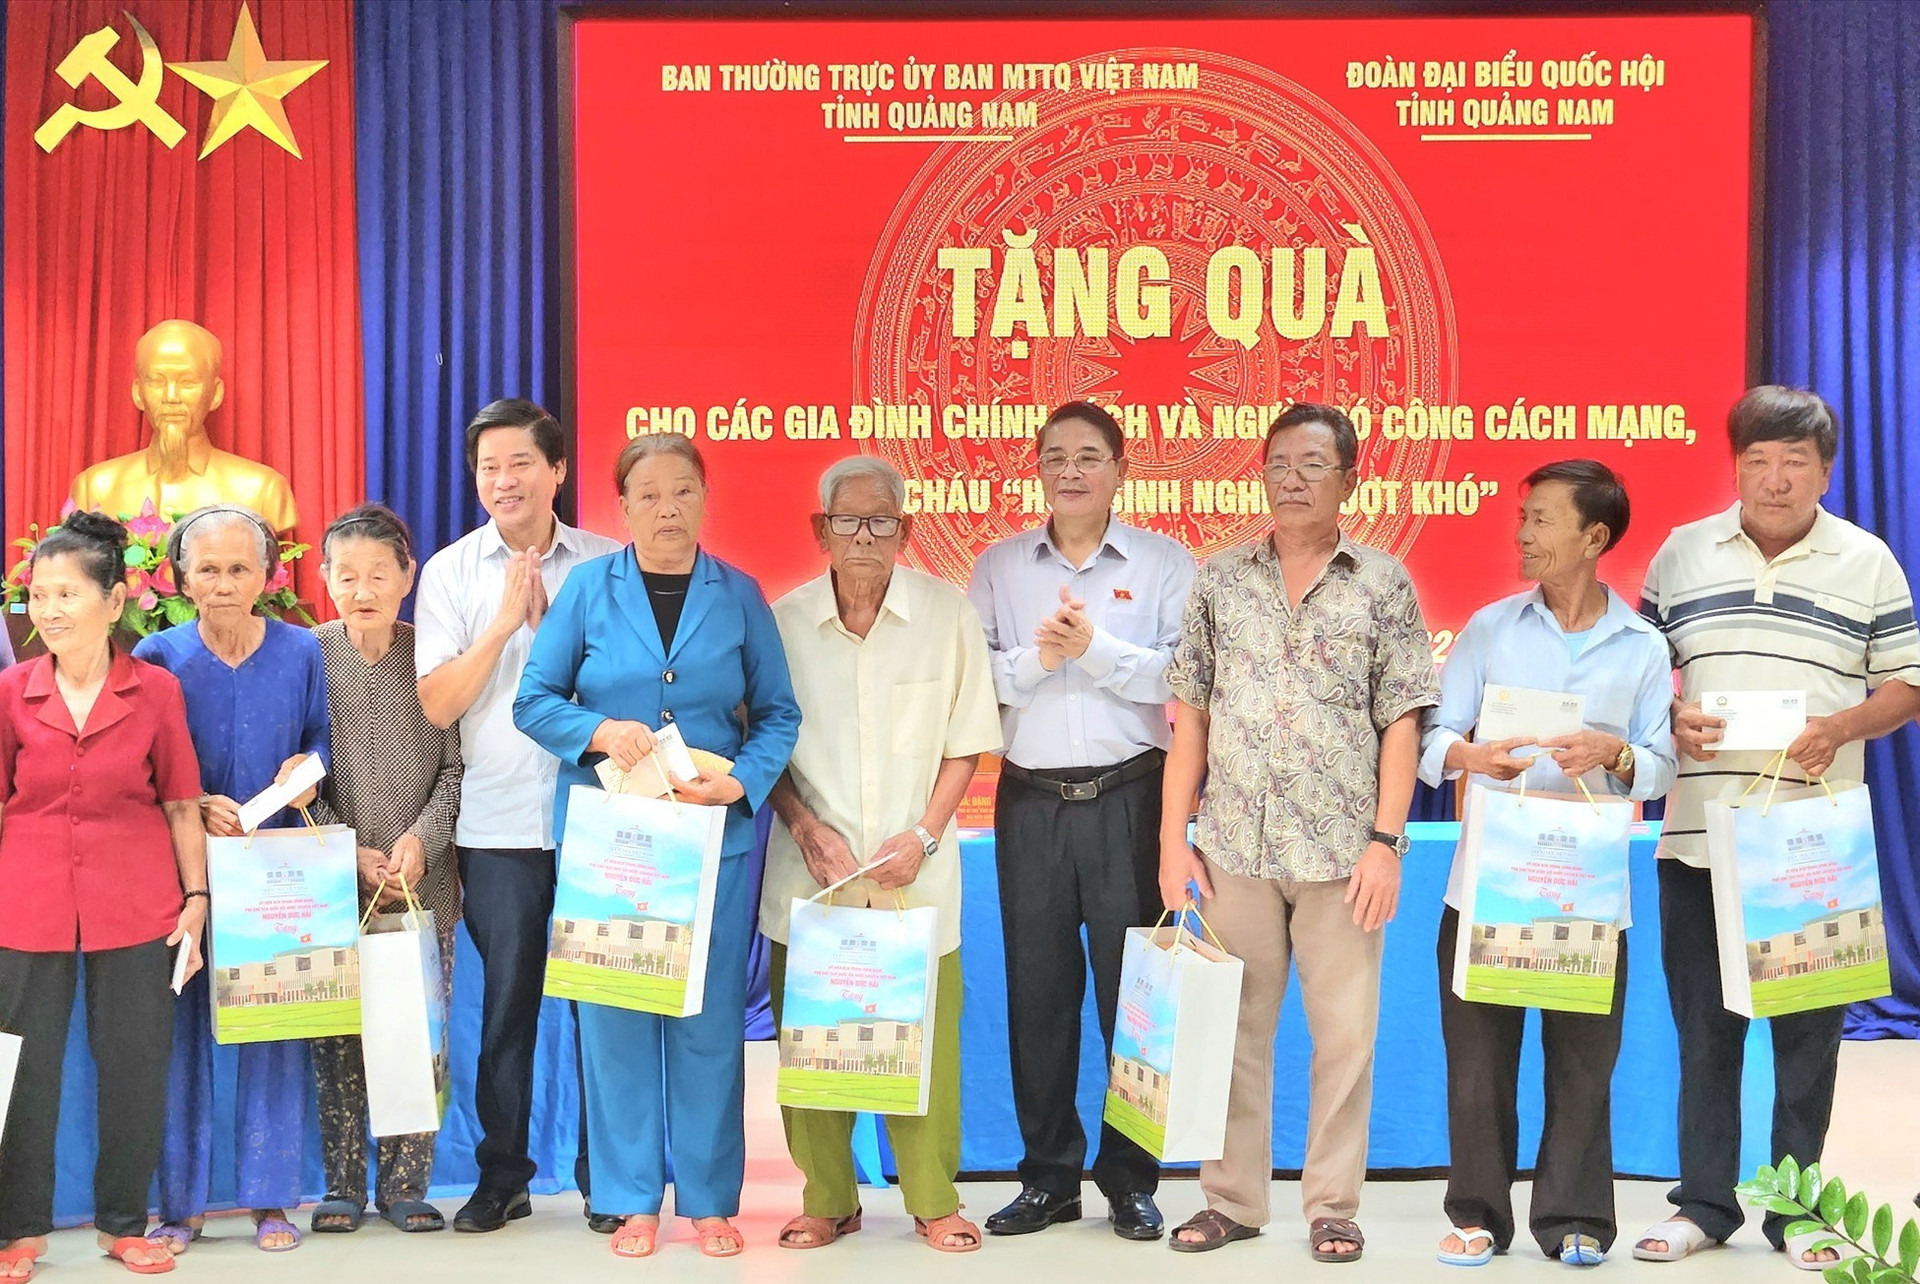 Phó Chủ tịch Quốc hội Nguyễn Đức Hải tặng nhiều phần quà cho người dân trên đảo. Ảnh: Q.T